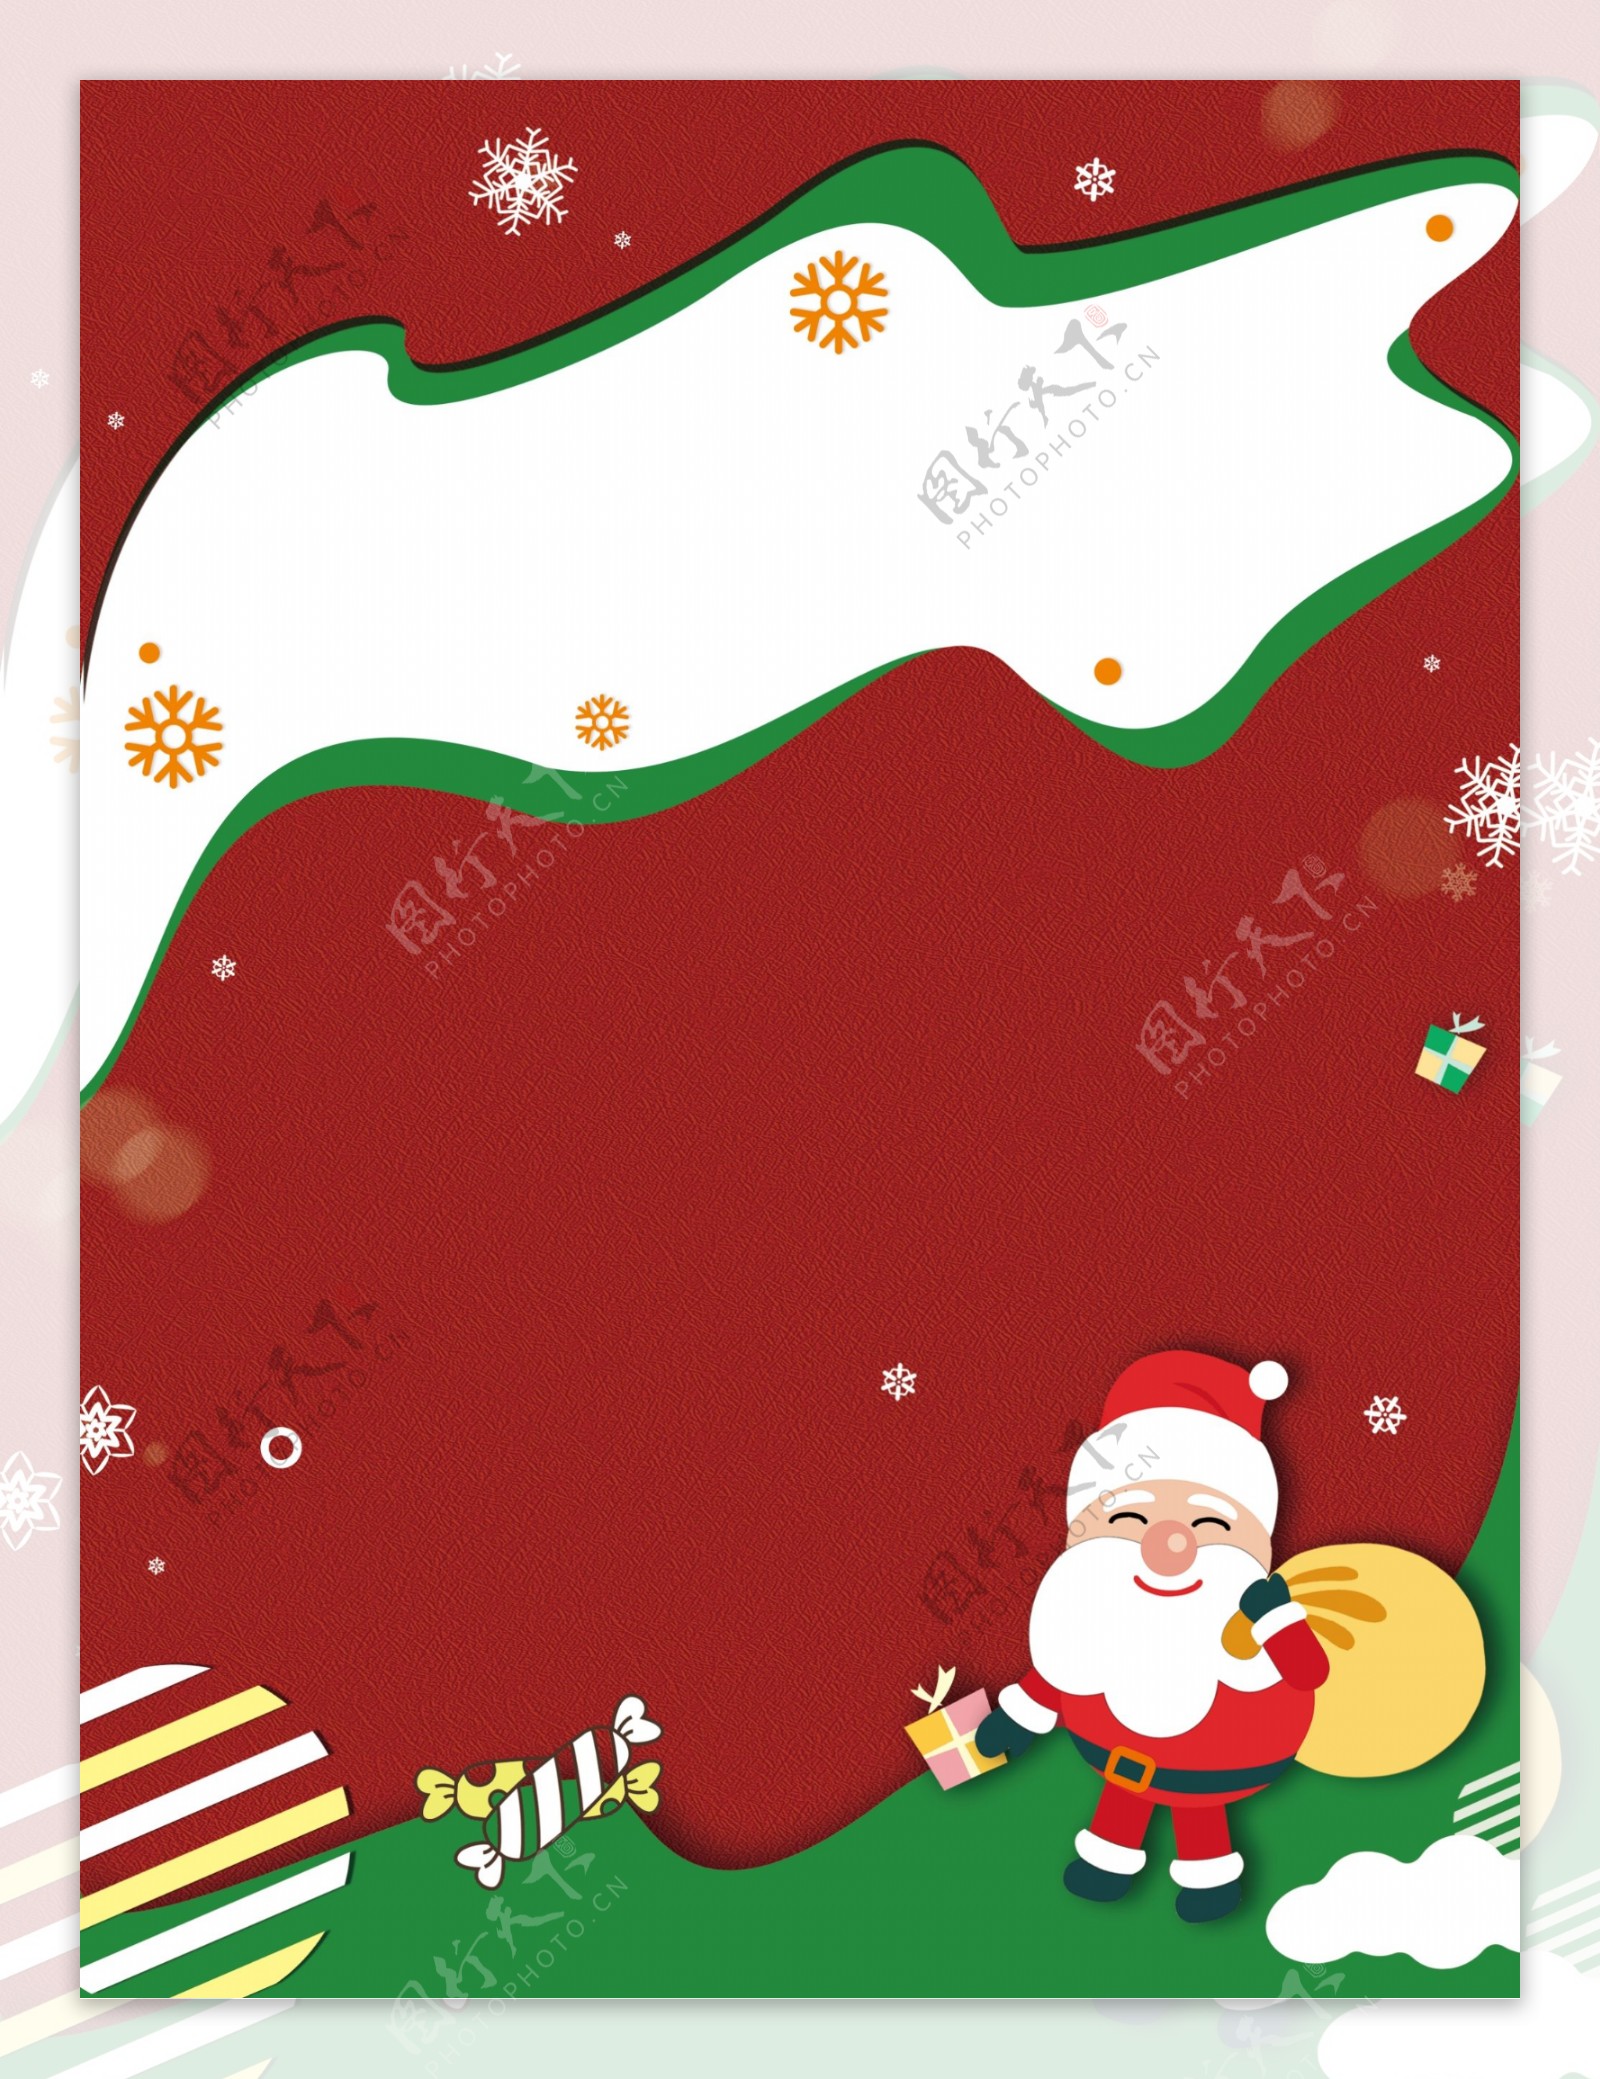 剪纸风红绿色圣诞节背景素材